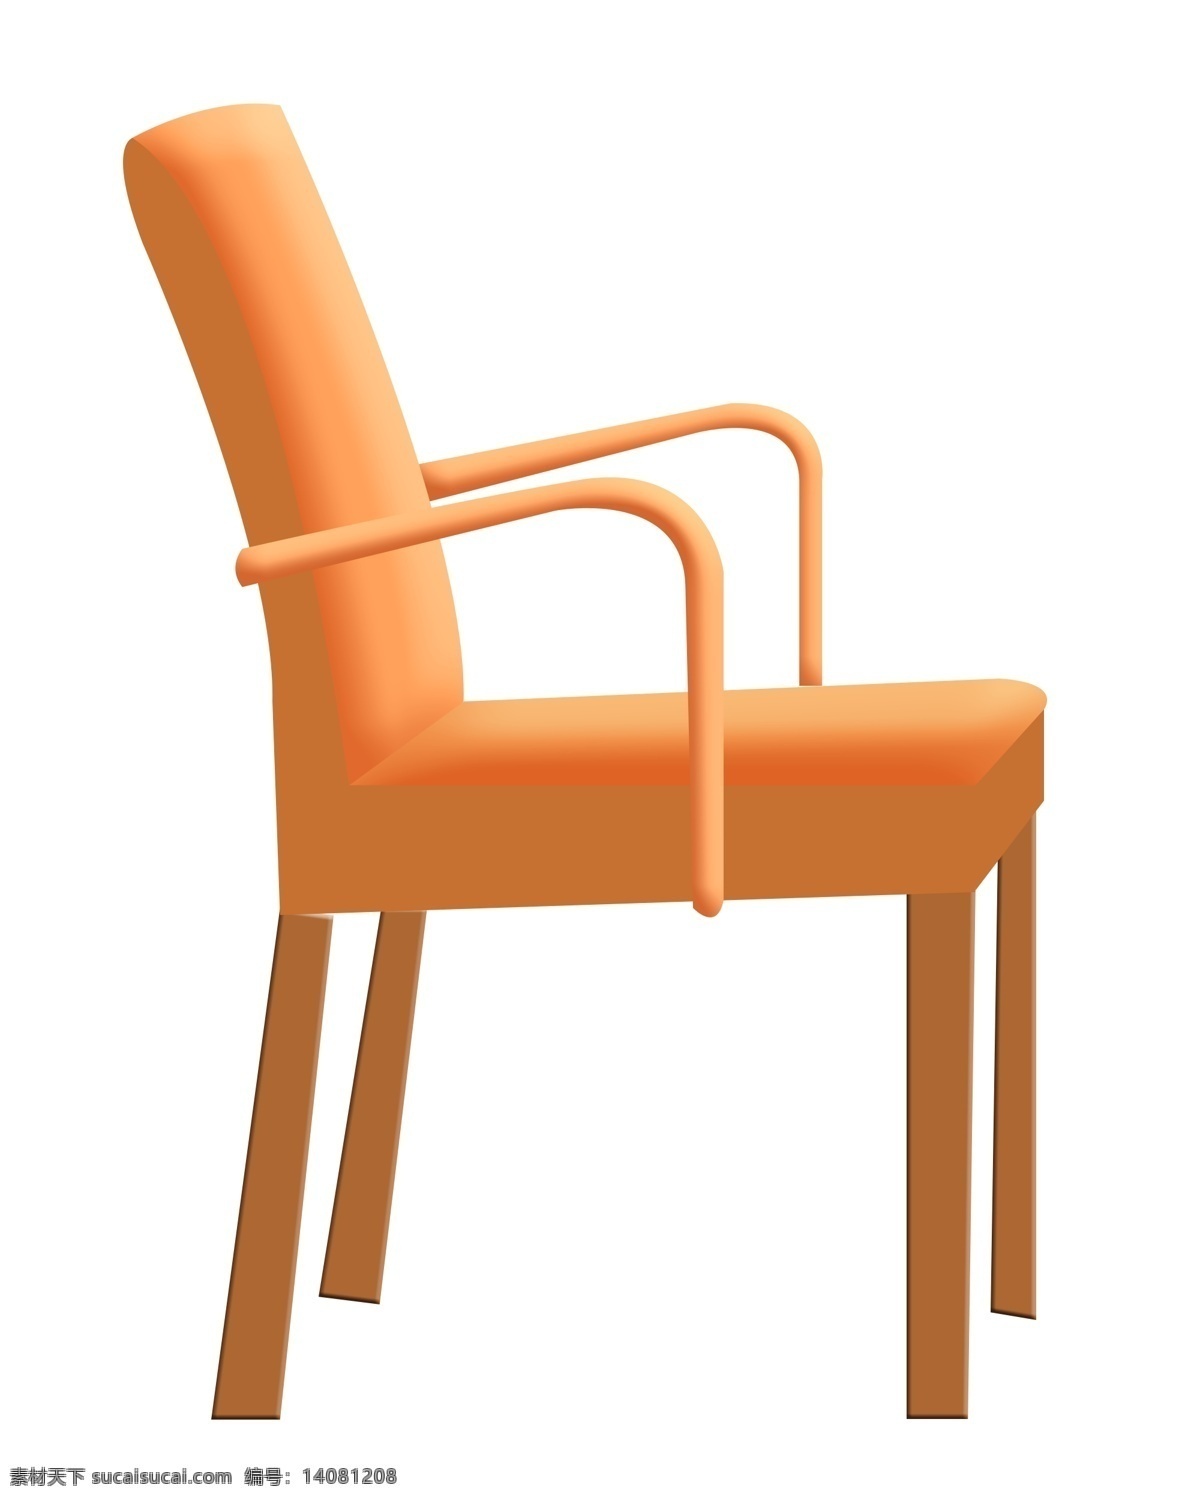 沙发椅子 家具 插画 沙发的椅子 卡通插画 家具插画 椅子插画 家具椅子 座位椅子 橘色的椅子